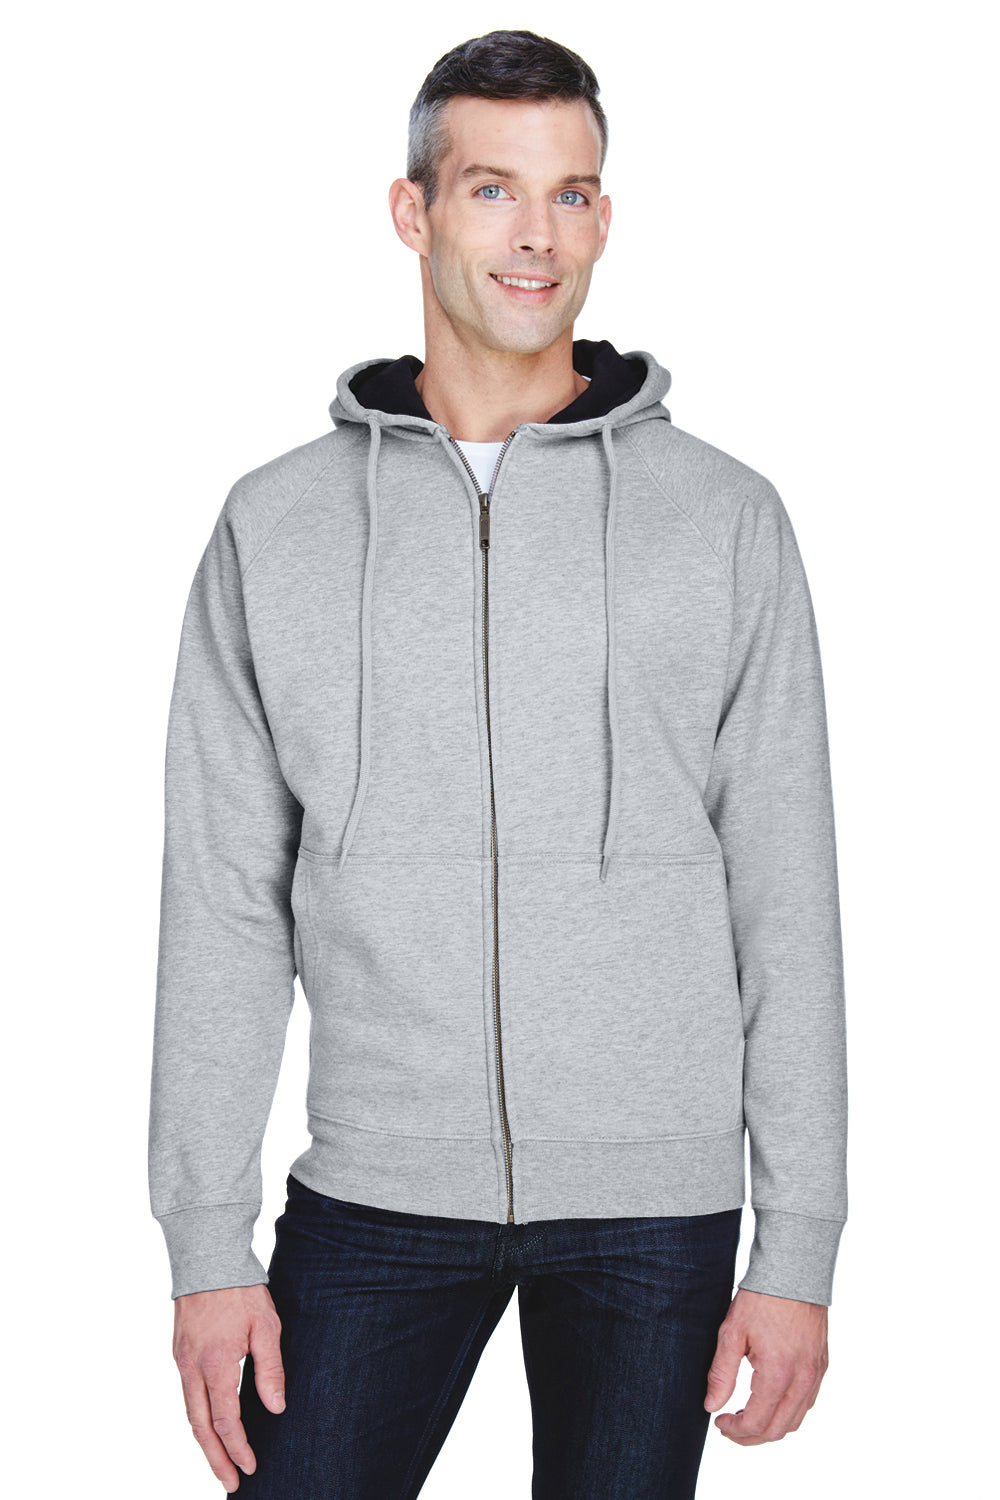 UltraClub 8463 Mens Rugged Wear Water Resistant Fleece Full Zip Hooded Sweatshirt Hoodie Heather Grey Front